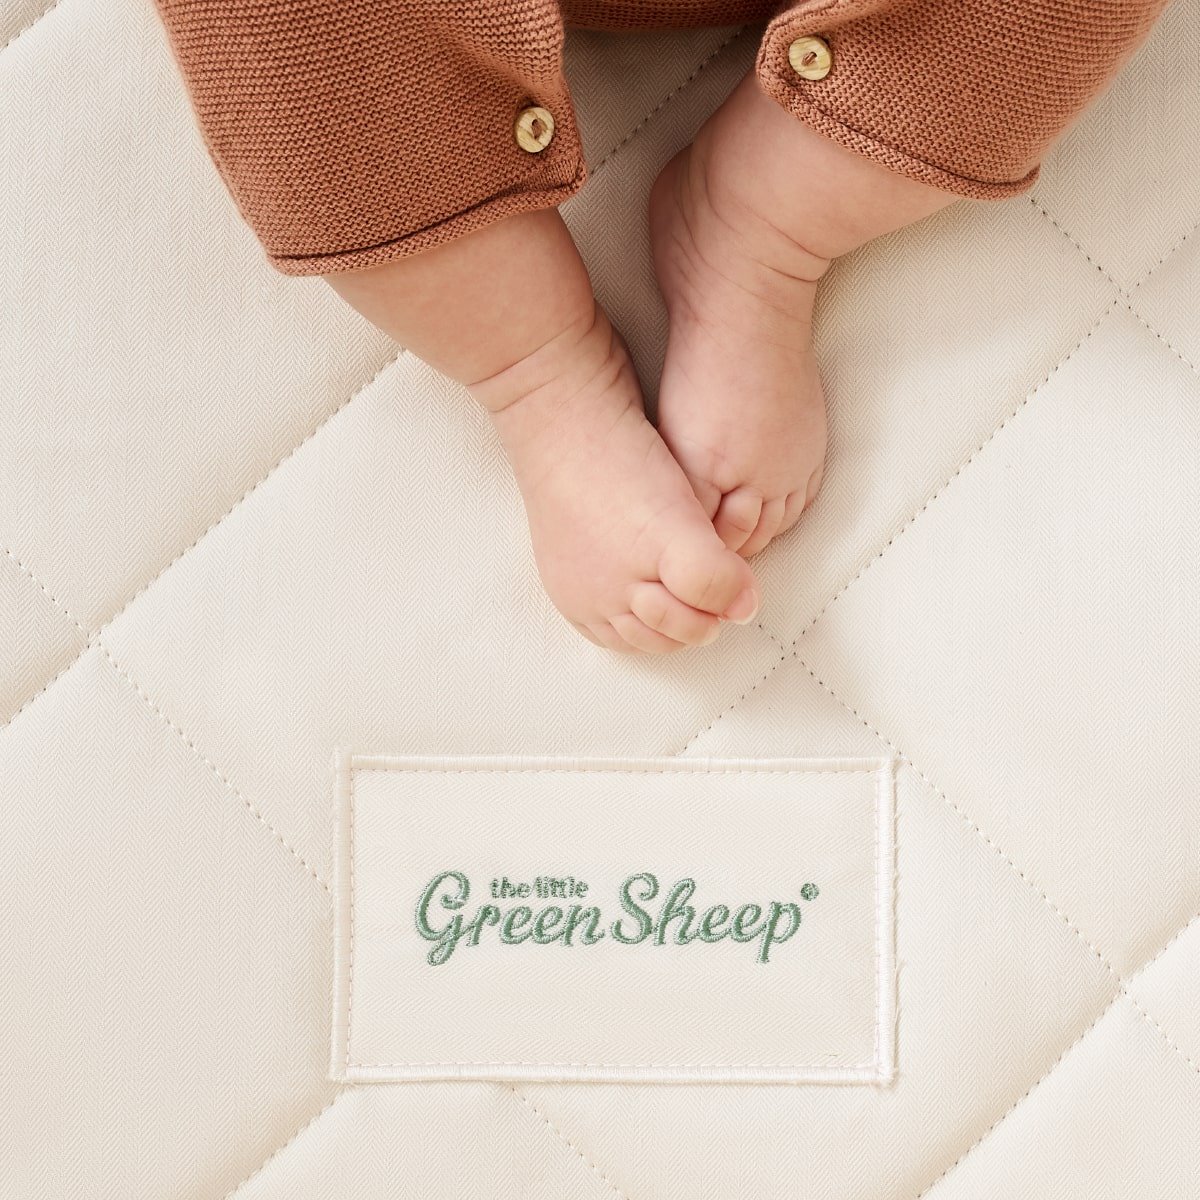 the little green sheep cot mattress